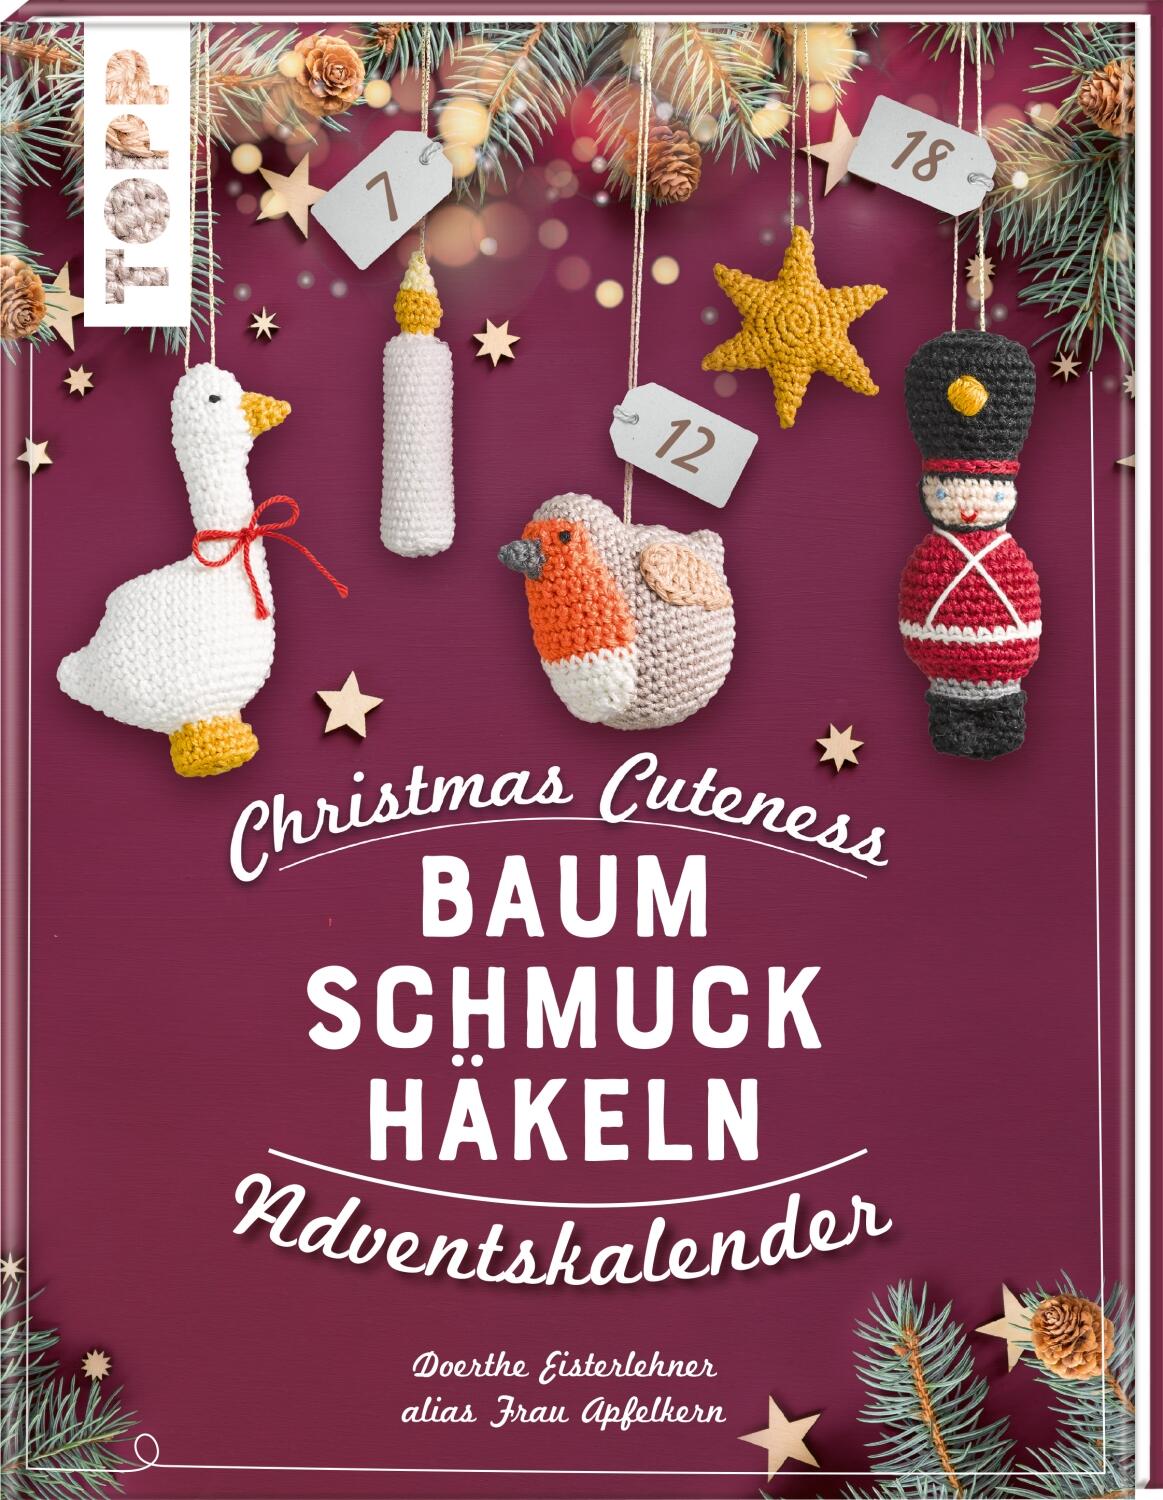 Christmas Cuteness. Christbaum Schmuck häkeln von D. Eisterlehner